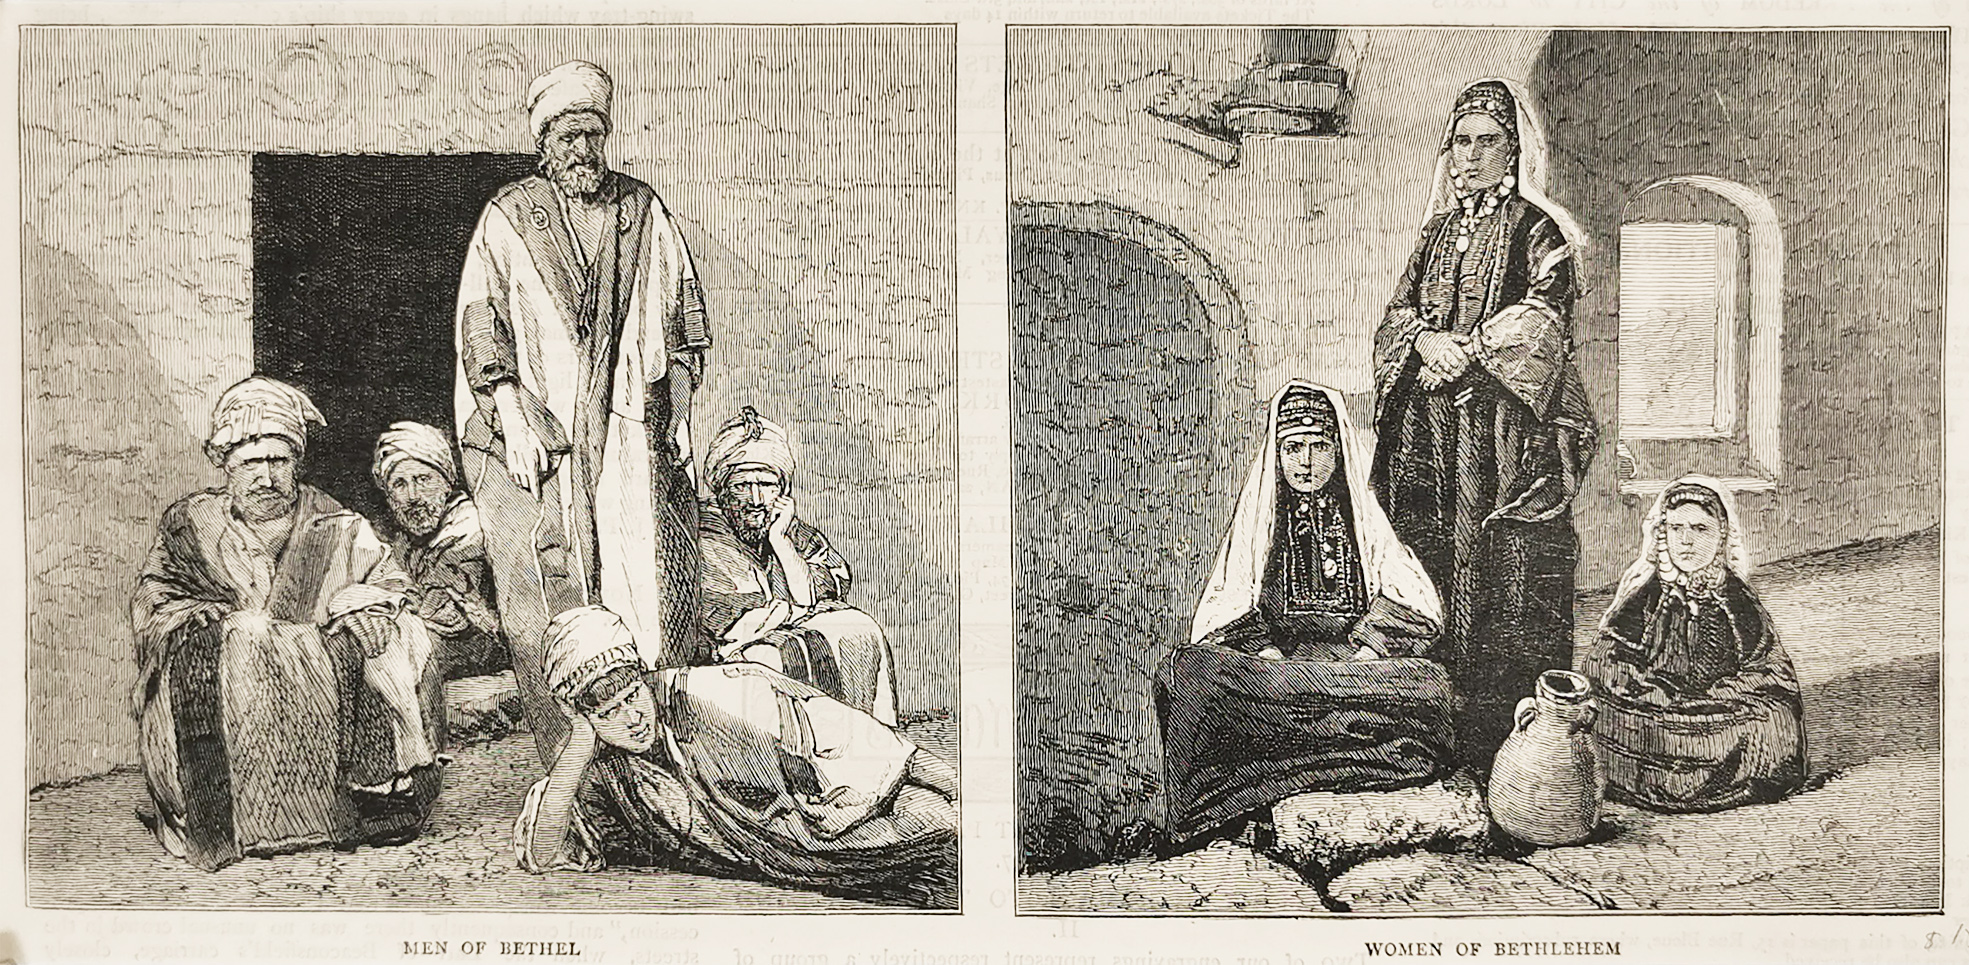 Men of Bethel. Women of Bethlehem. - Antique Print from 1878